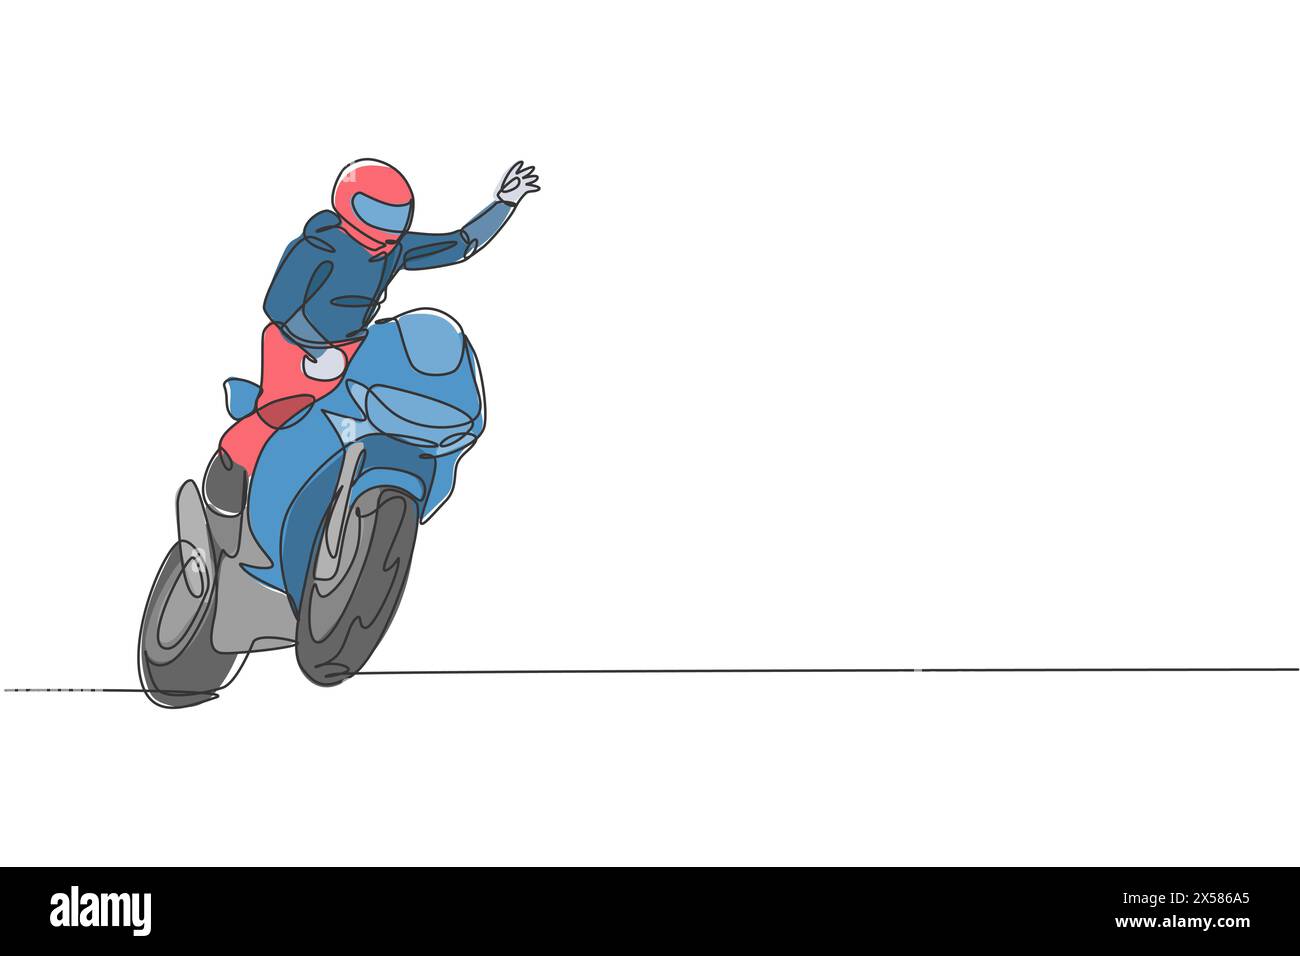 Eine durchgehende Linienzeichnung eines jungen Moto-Rennfahrers schwenkt seine Hand zu den Zuschauern. Grafik-Vektor-Illustration des Superbike-Rennkonzepts. Dynamisches Single-lin Stock Vektor